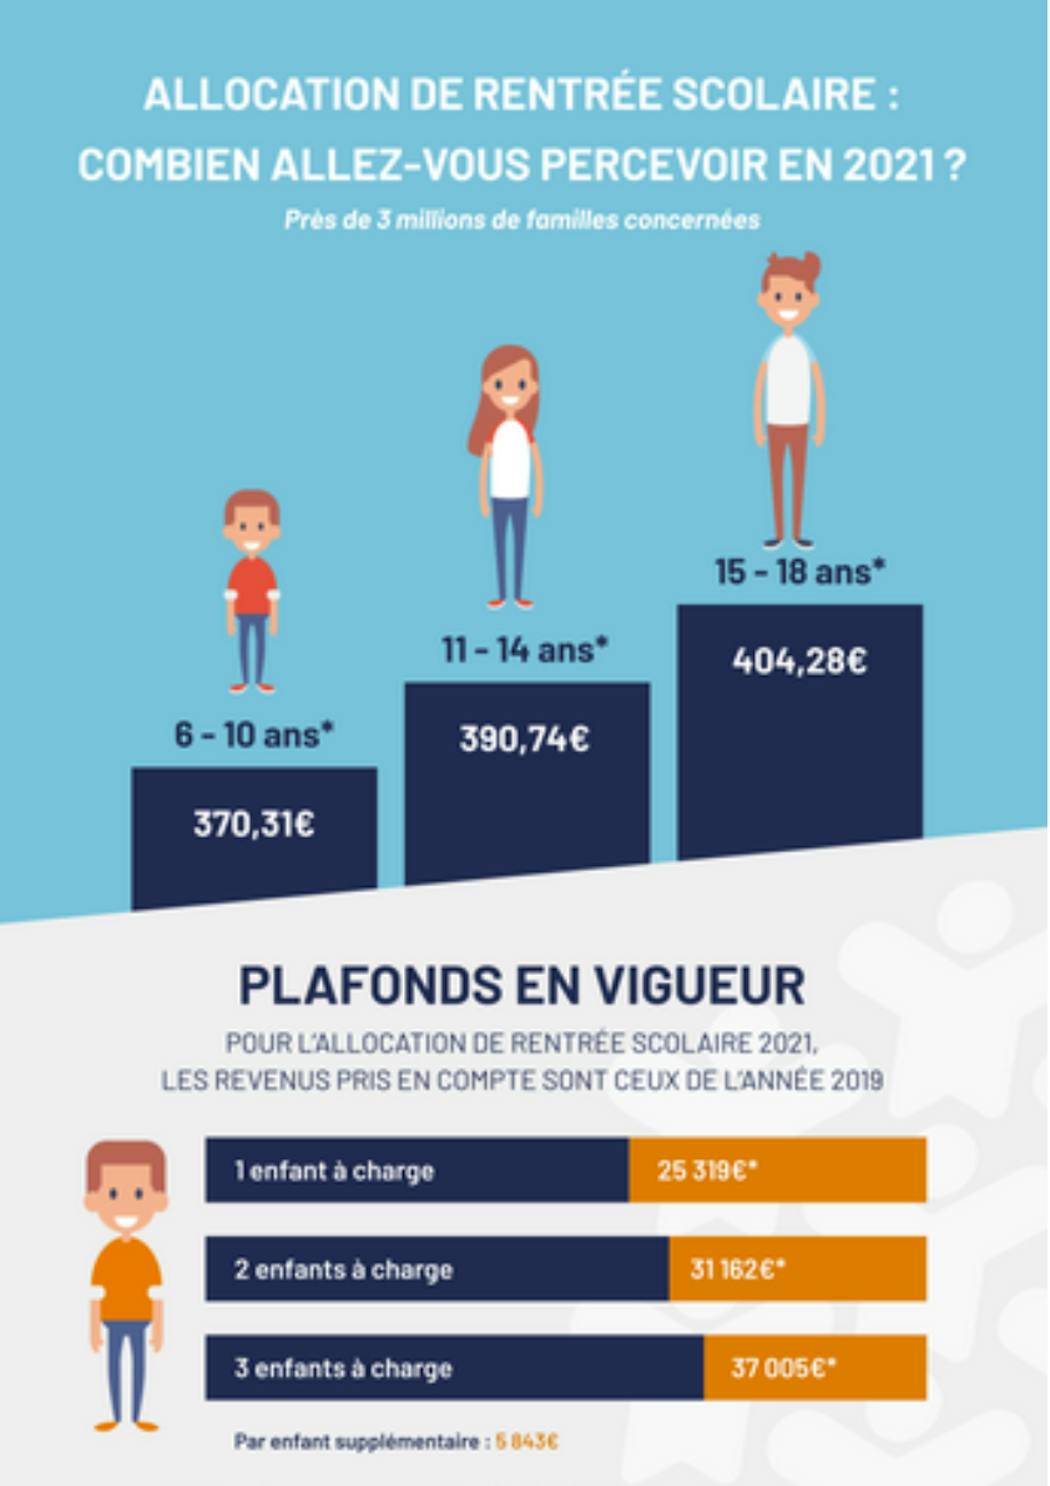 Le site aide-sociale.fr propose un simulateur gratuit pour l'allocation de rentrée scolaire